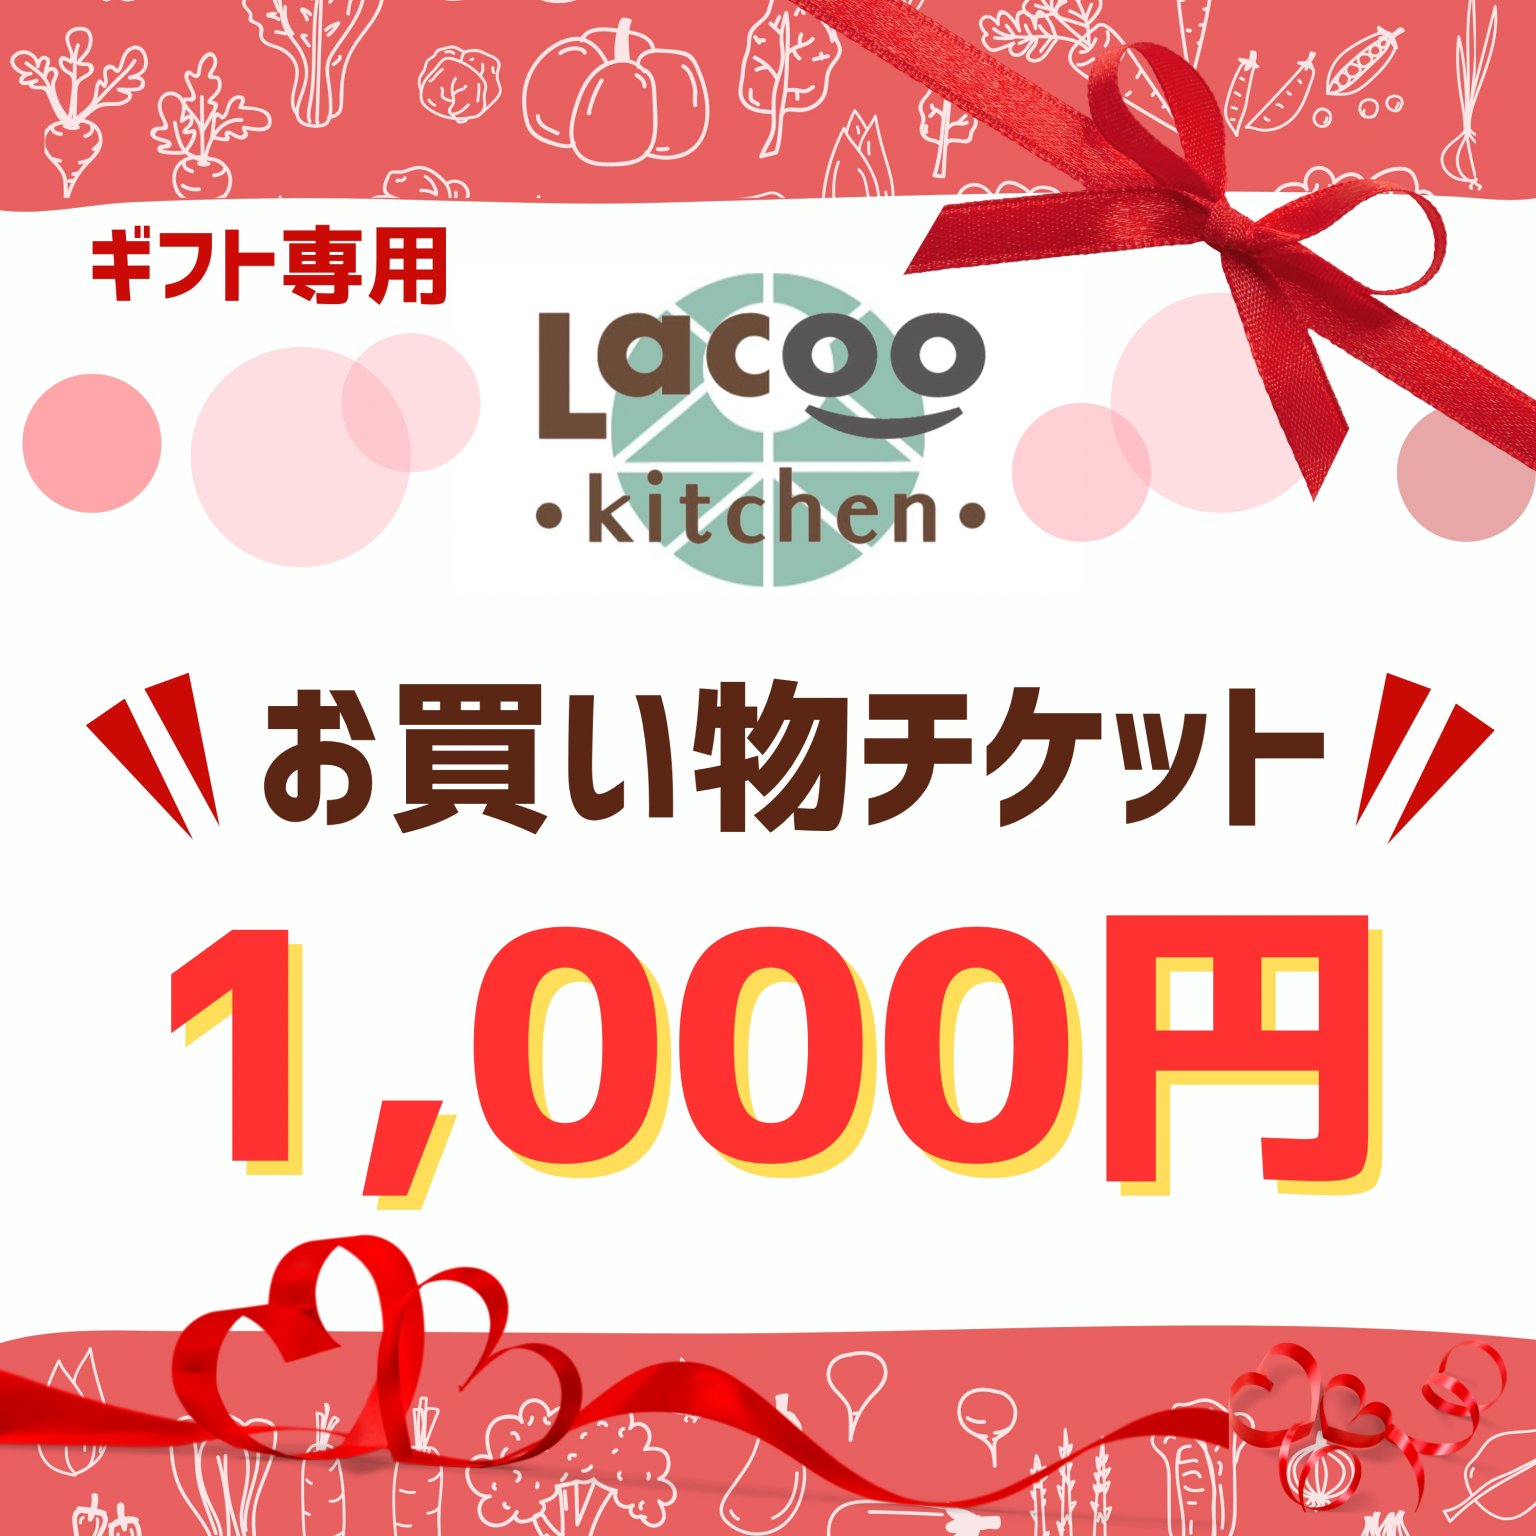 【ギフト専用】1,000円お買い物チケット(Lacoo kitchen...)